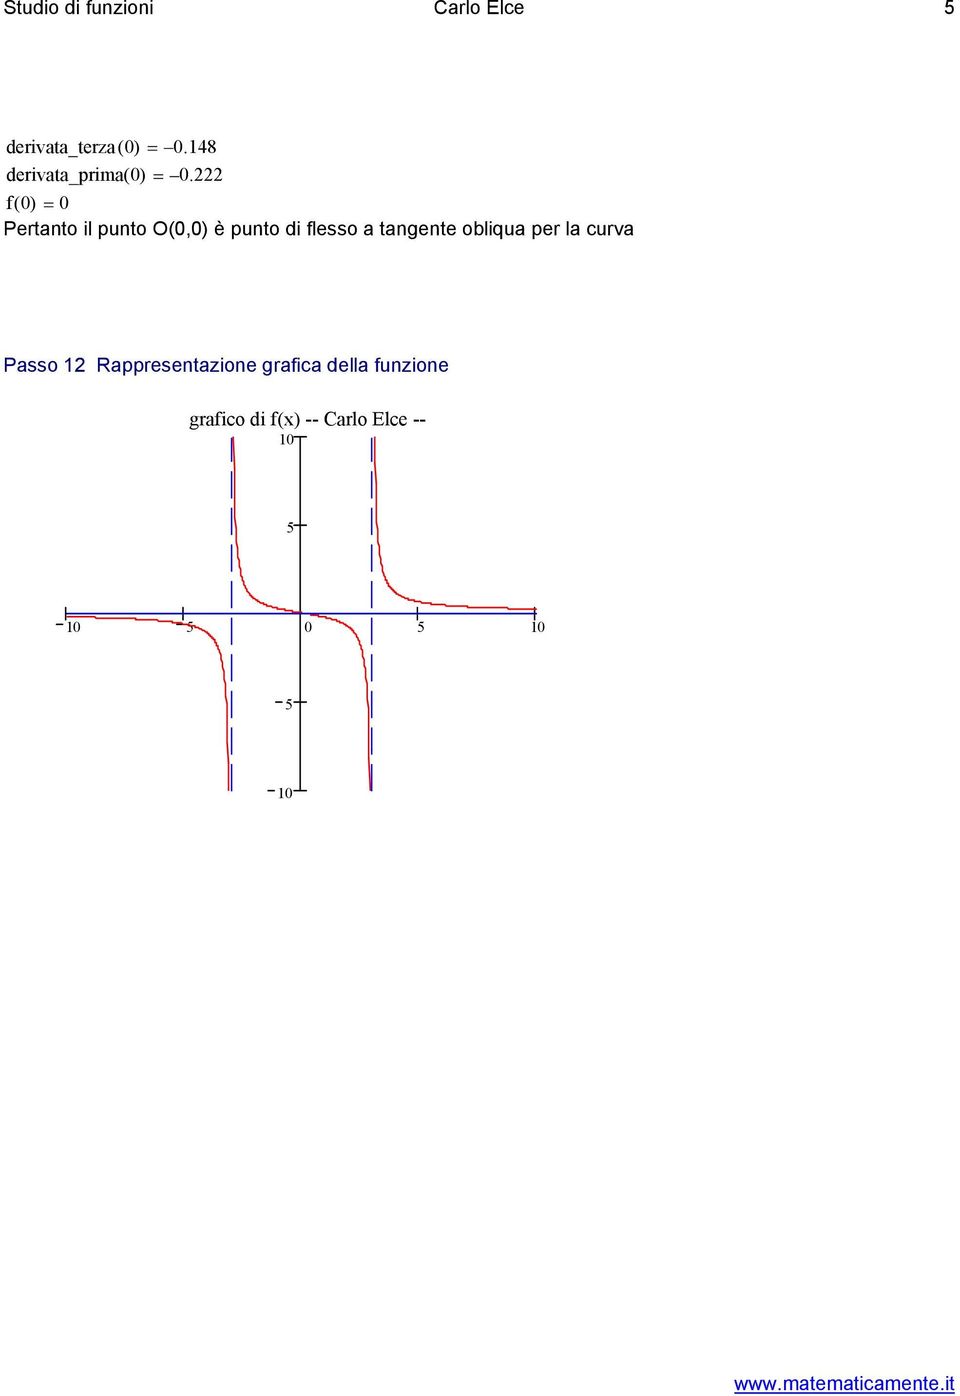 f = Pertanto il punto O(,) è punto i flesso a tangente